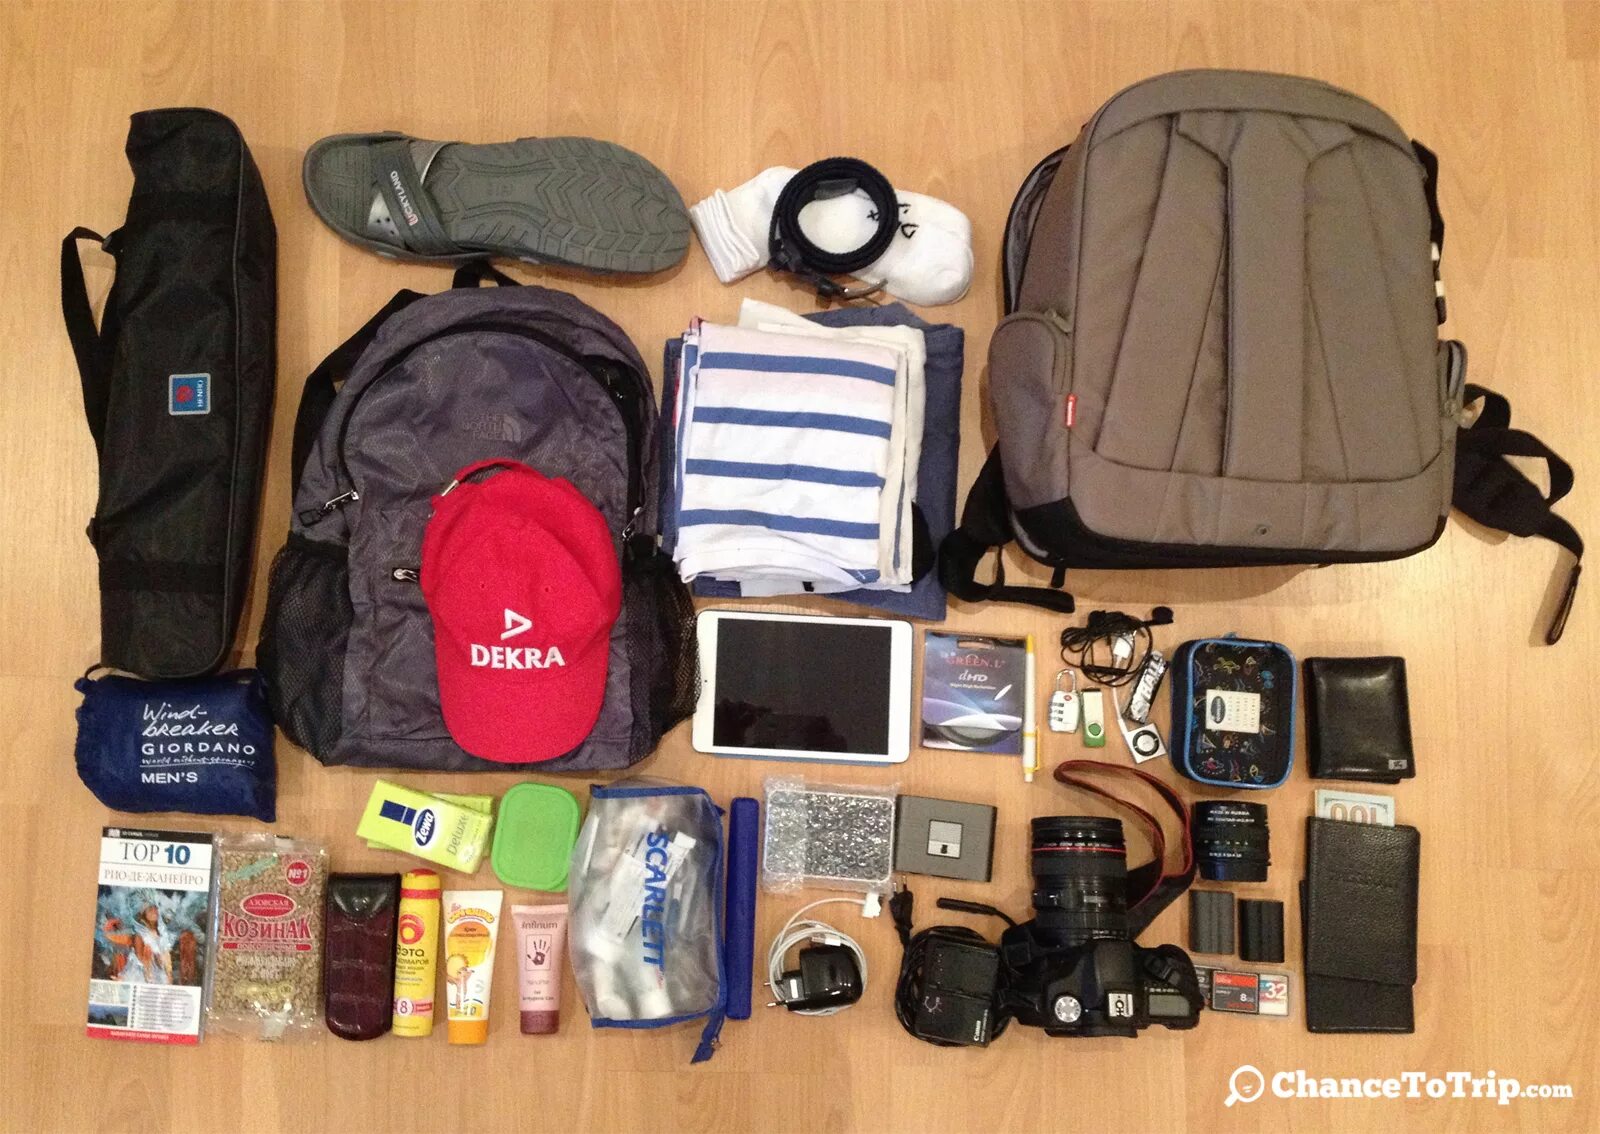 Самая взять. Вещи для путешествия. Необходимые вещи для путешествия. Необходимые предметы для путешествия. Вещи путешественника.